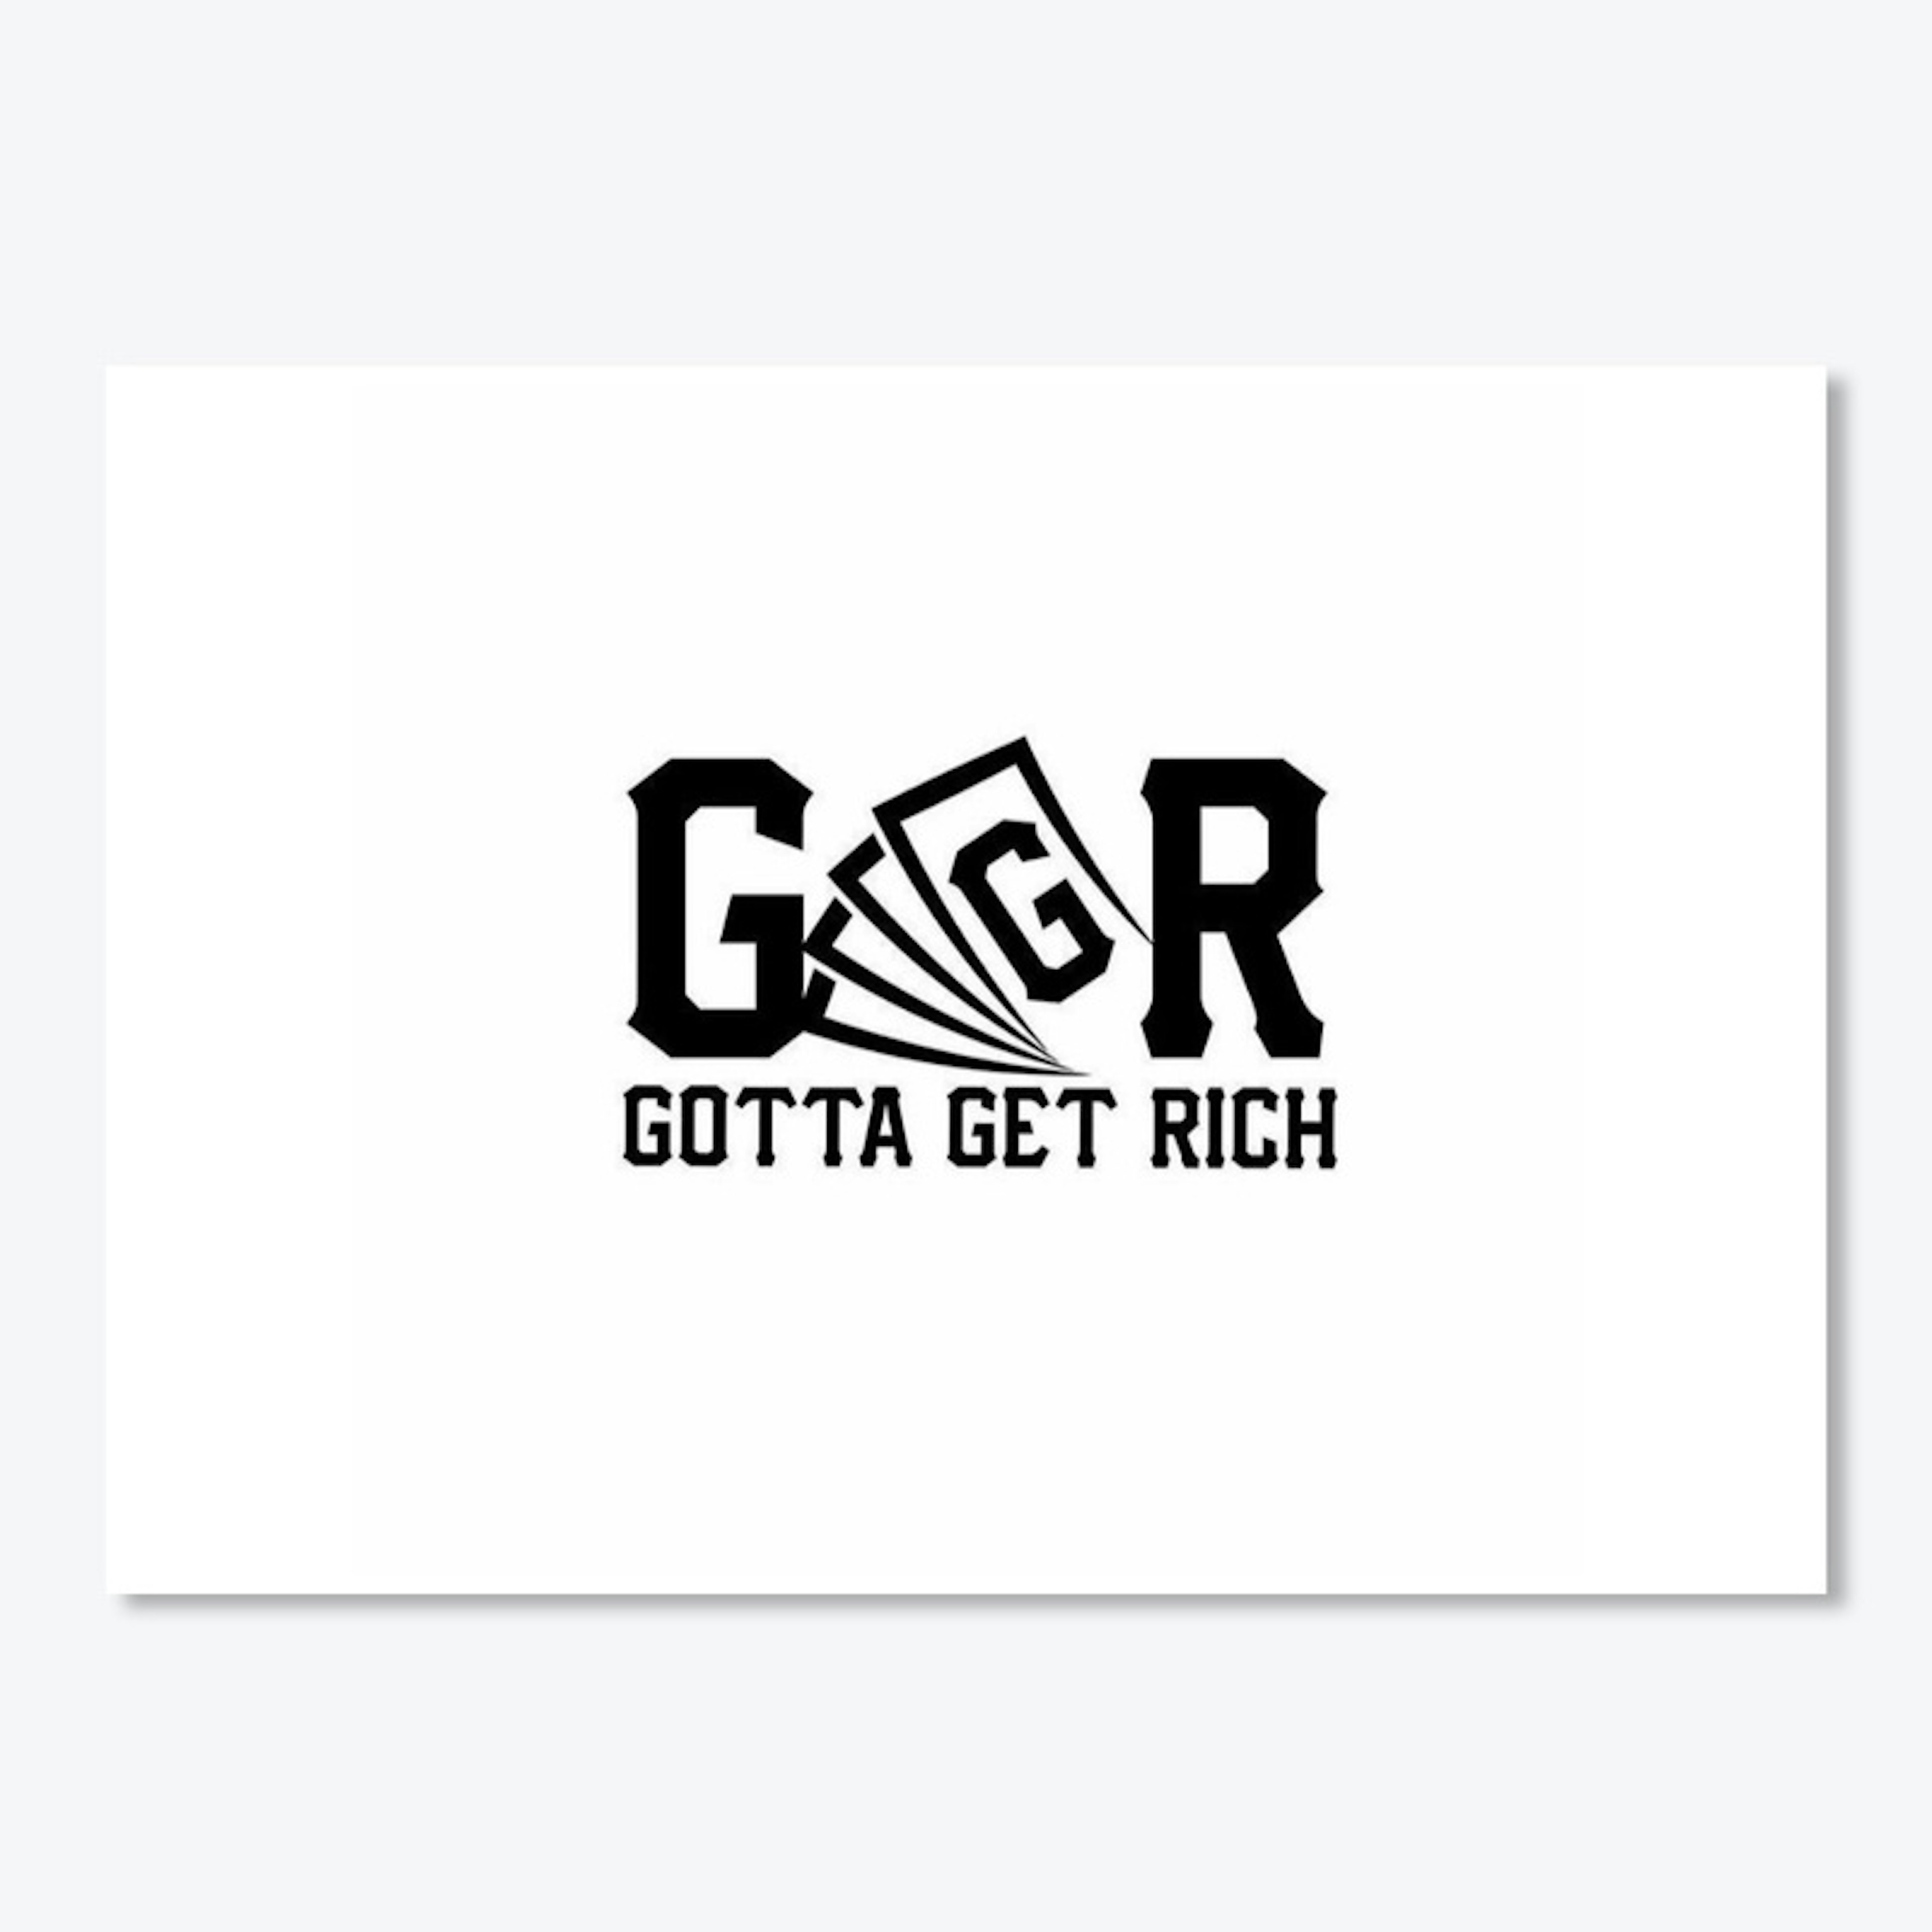 GGR "Gotta Get Rich"